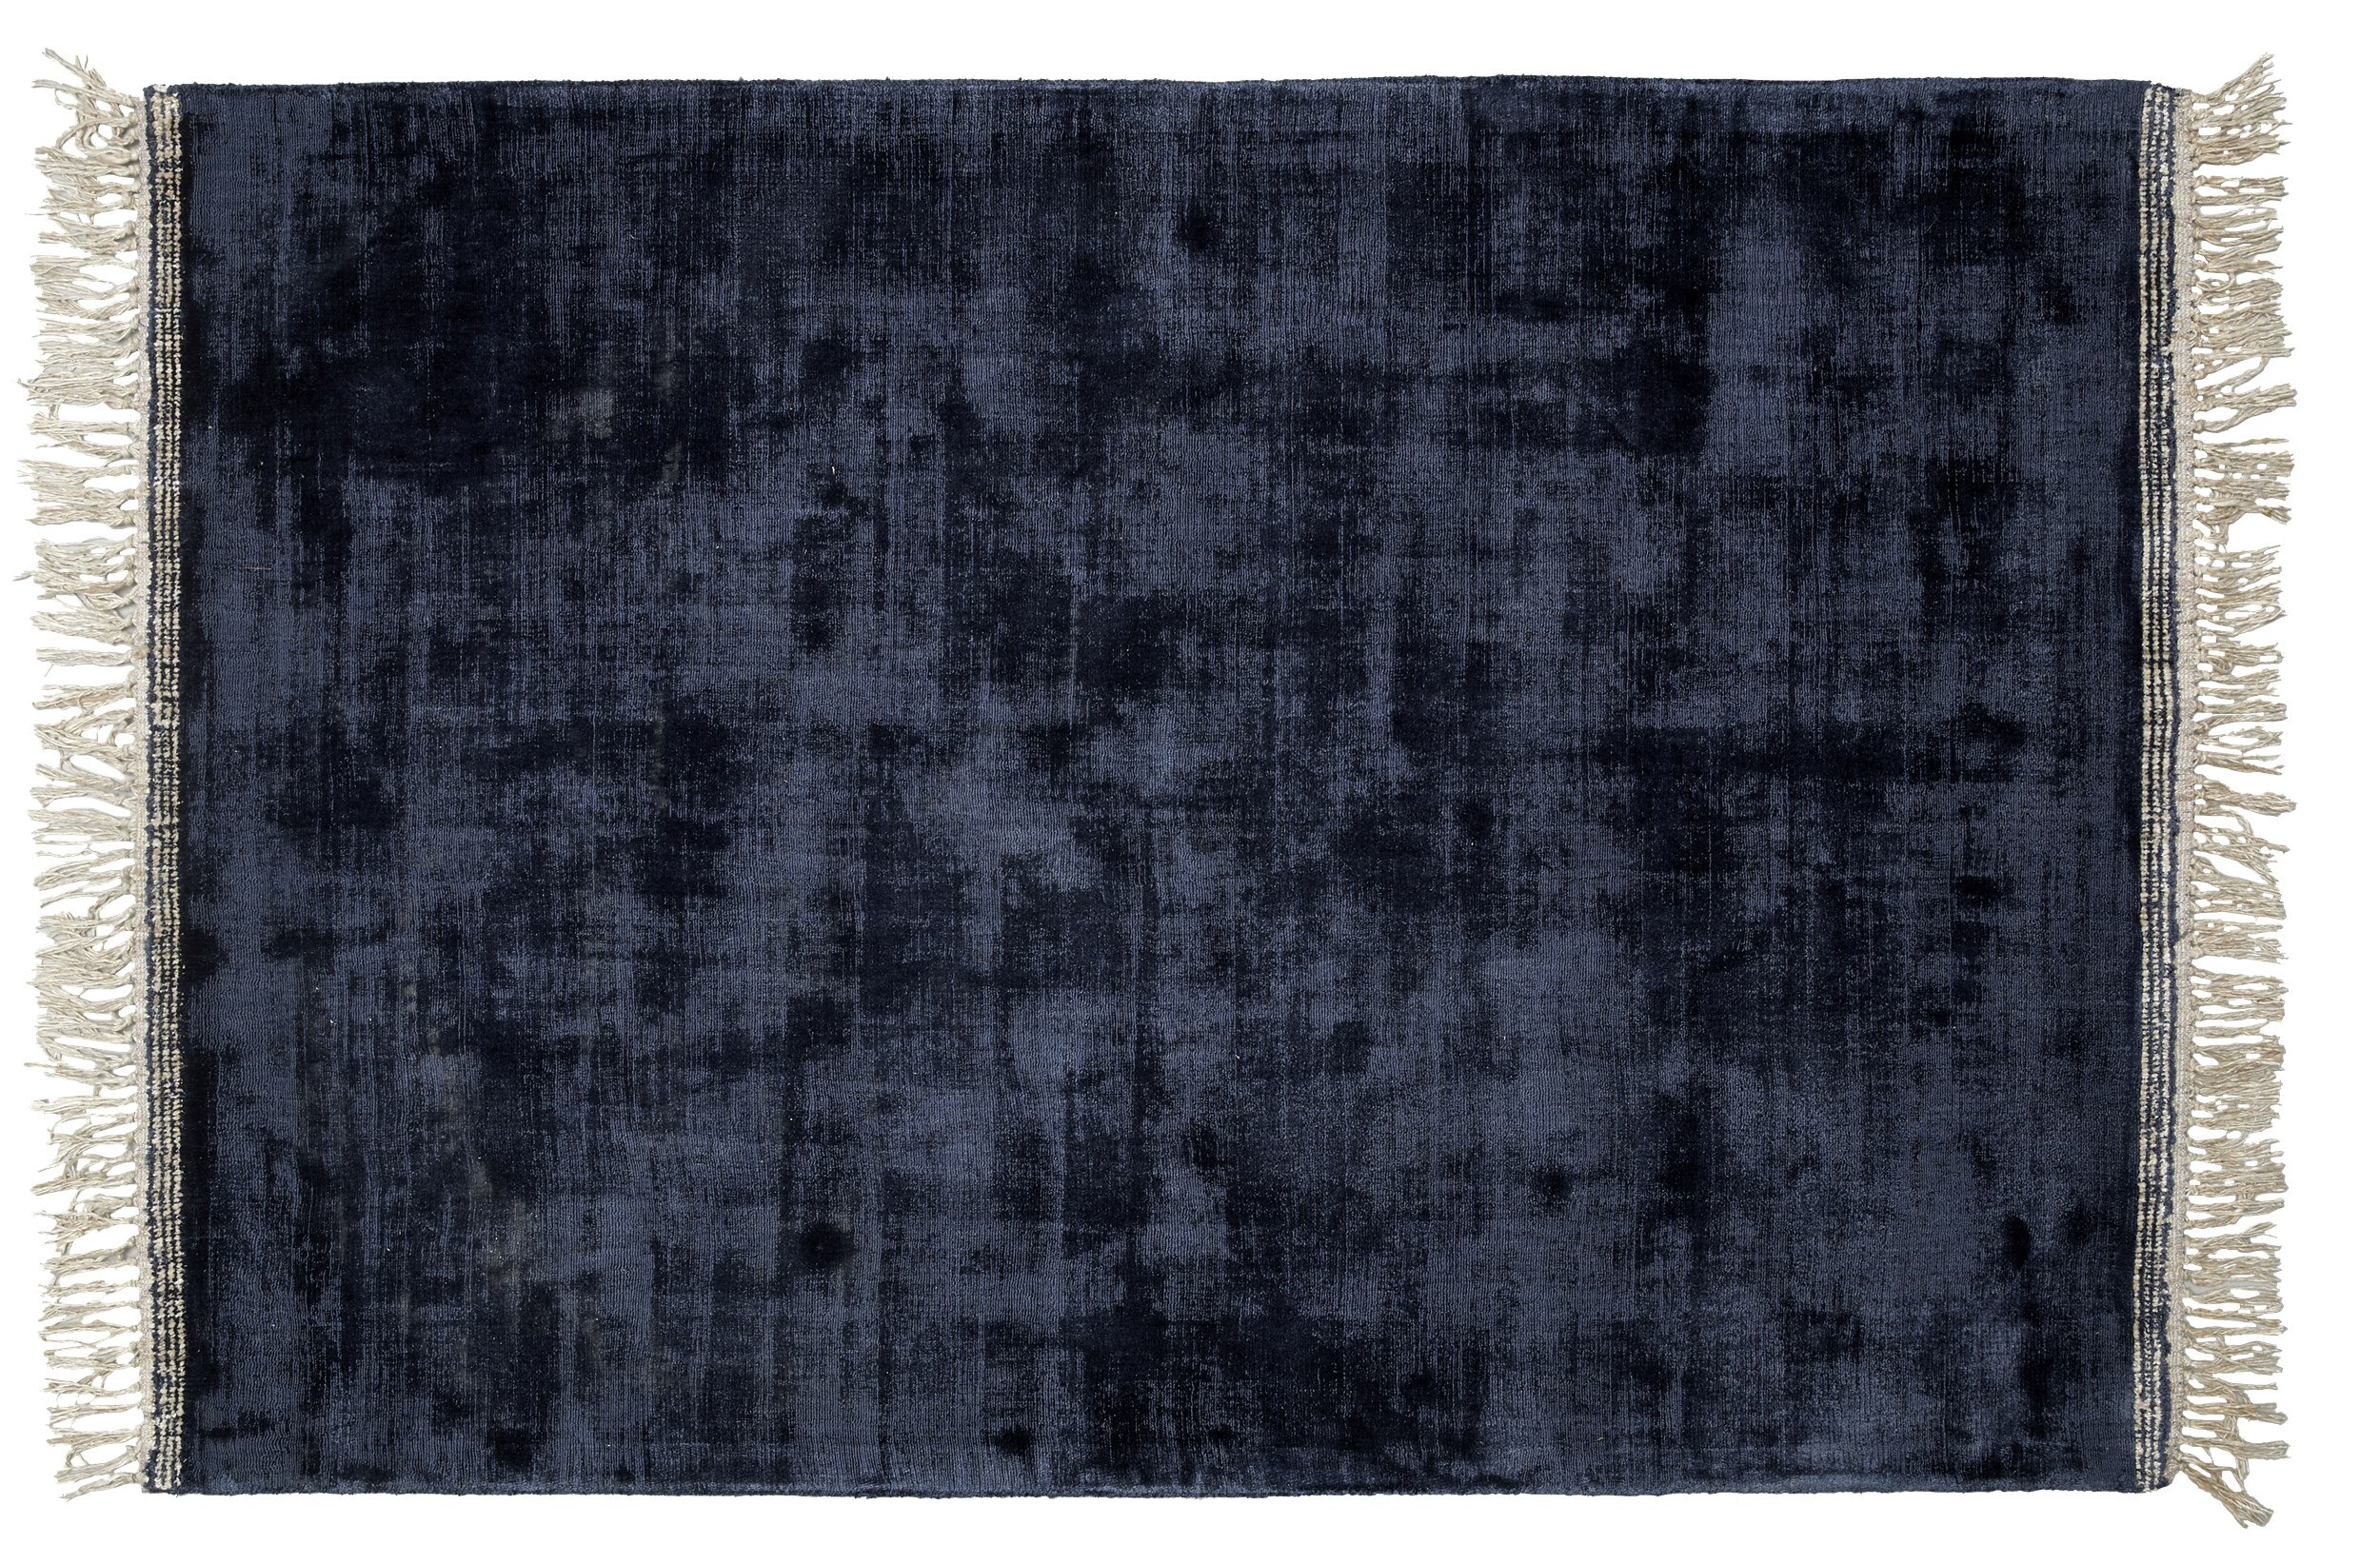 Topaz Tuftad matta 140 x 200 cm - Mörkblå ull/viskos, ofwhite kantränder och off-white fransar